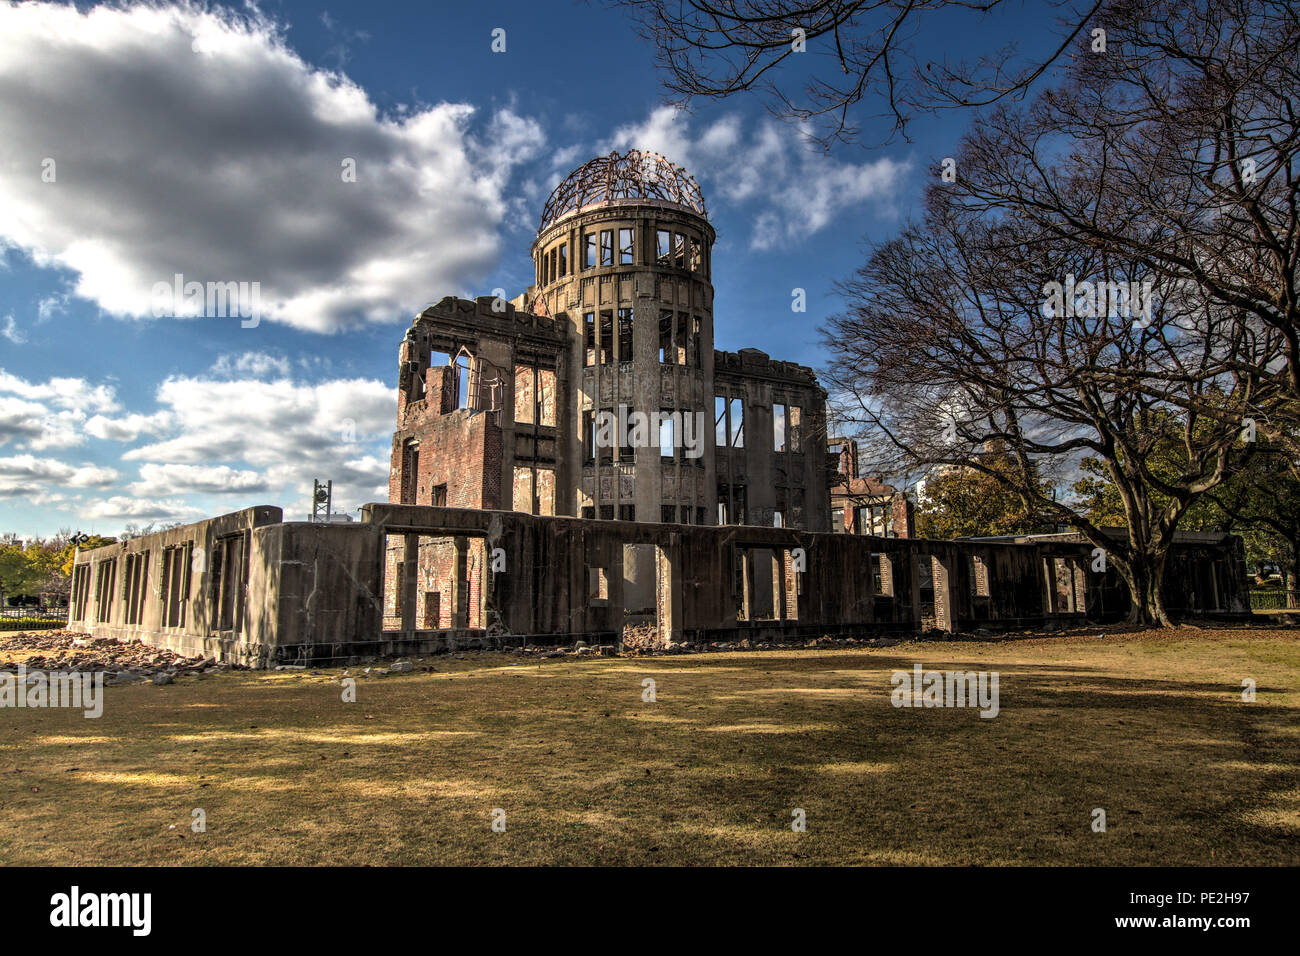 HDR photograph of the Atomic Bomb Dome (Genbaku Dōmu), part of the Hiroshima Peace Memorial in Hiroshima, Japan. Stock Photo